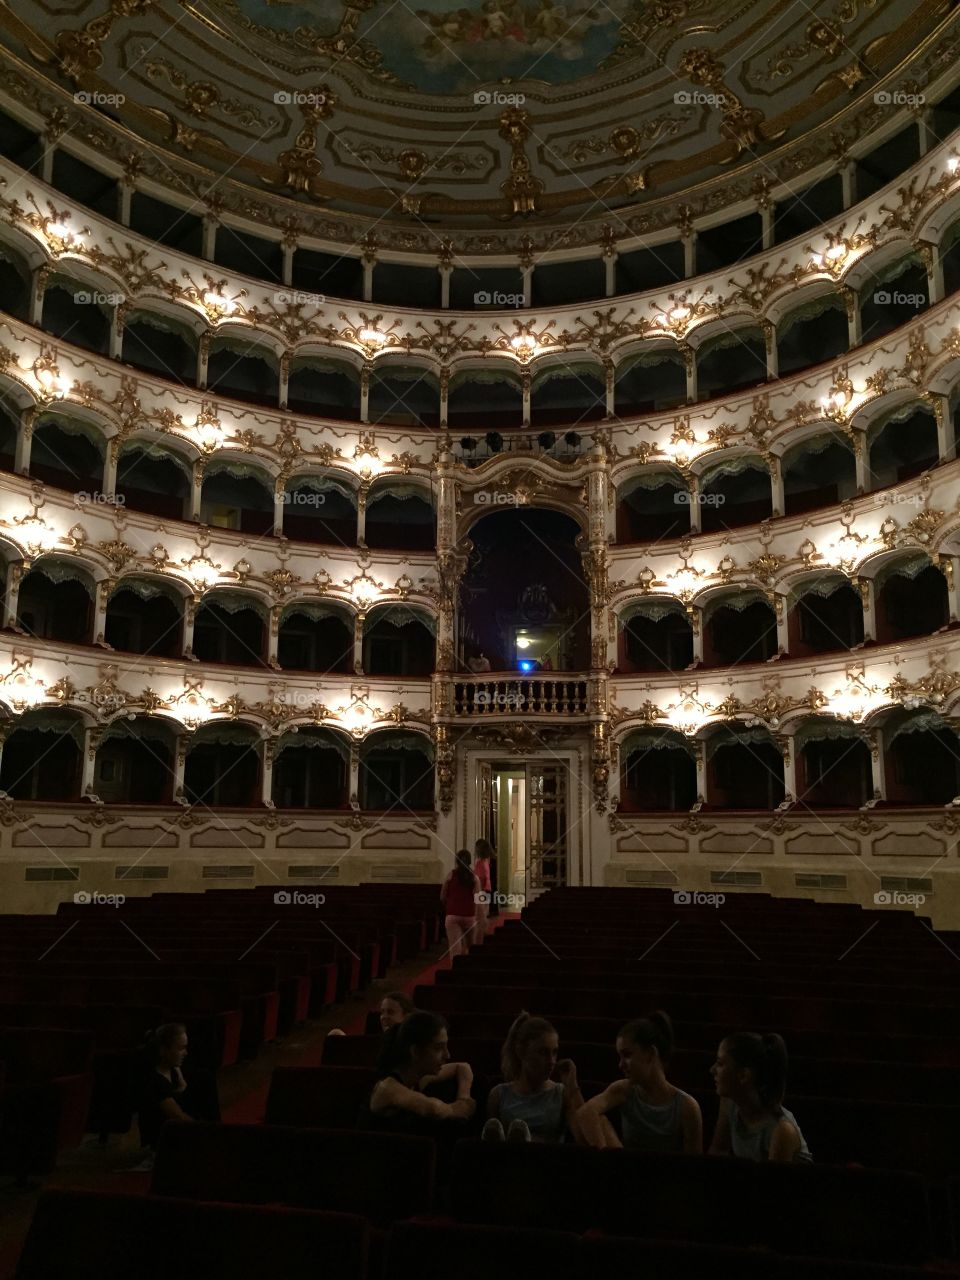 Teatro Municipale di Piacenza • Theatre in Piacenza, Italy